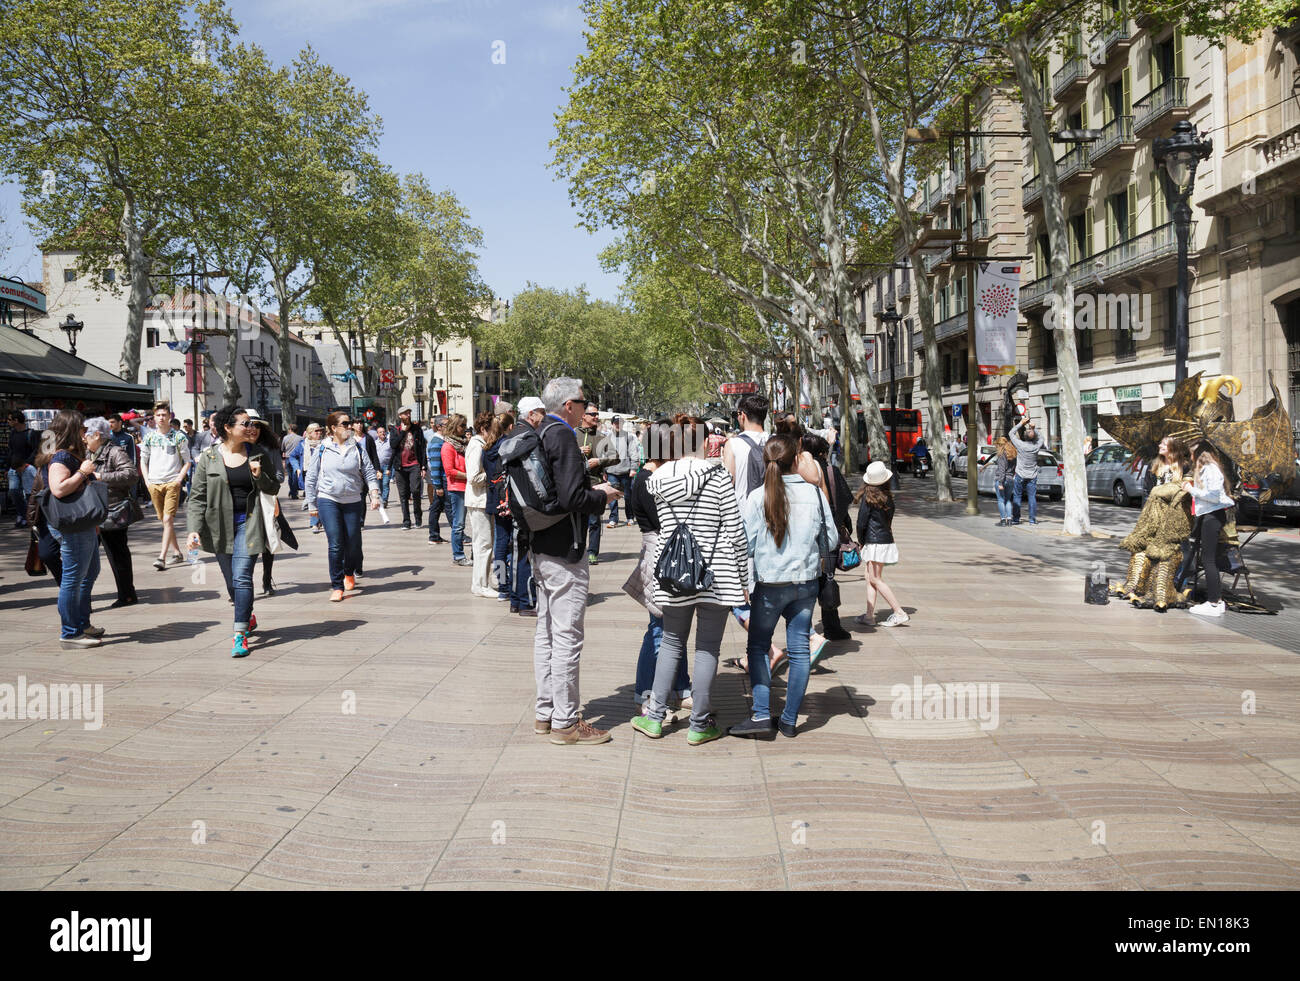 Balades et foules regardant une statue vivante sur La Rambla, Barcelone, Catalogne, Espagne Banque D'Images